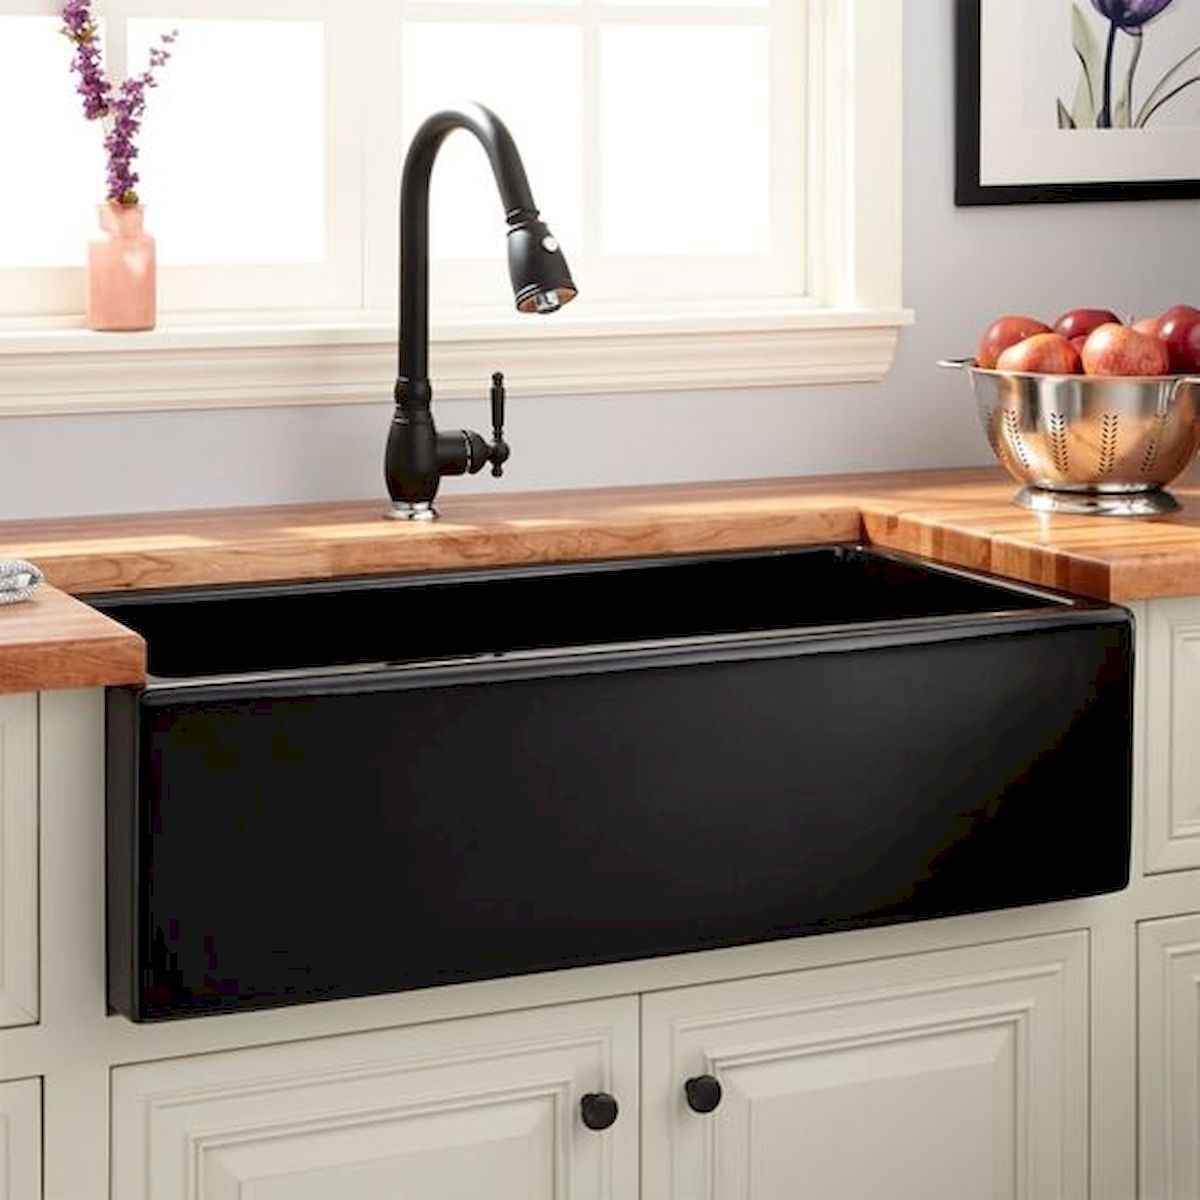 4 farmhouse kitchen sink ideas